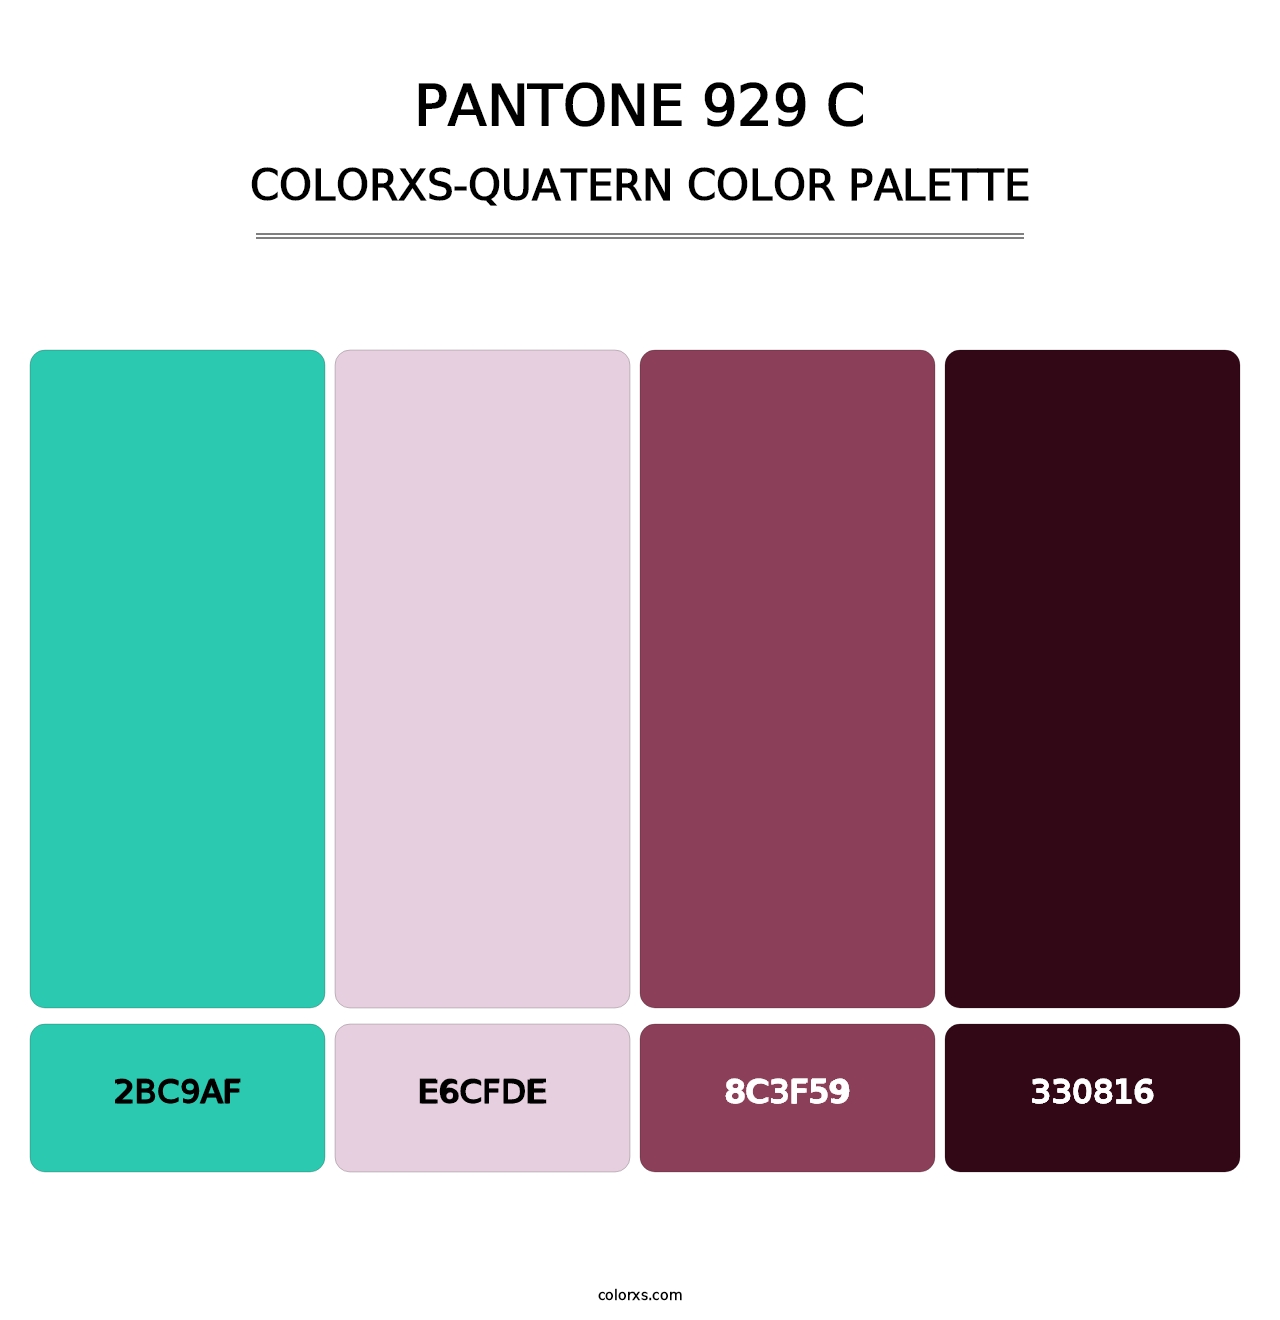 PANTONE 929 C - Colorxs Quatern Palette